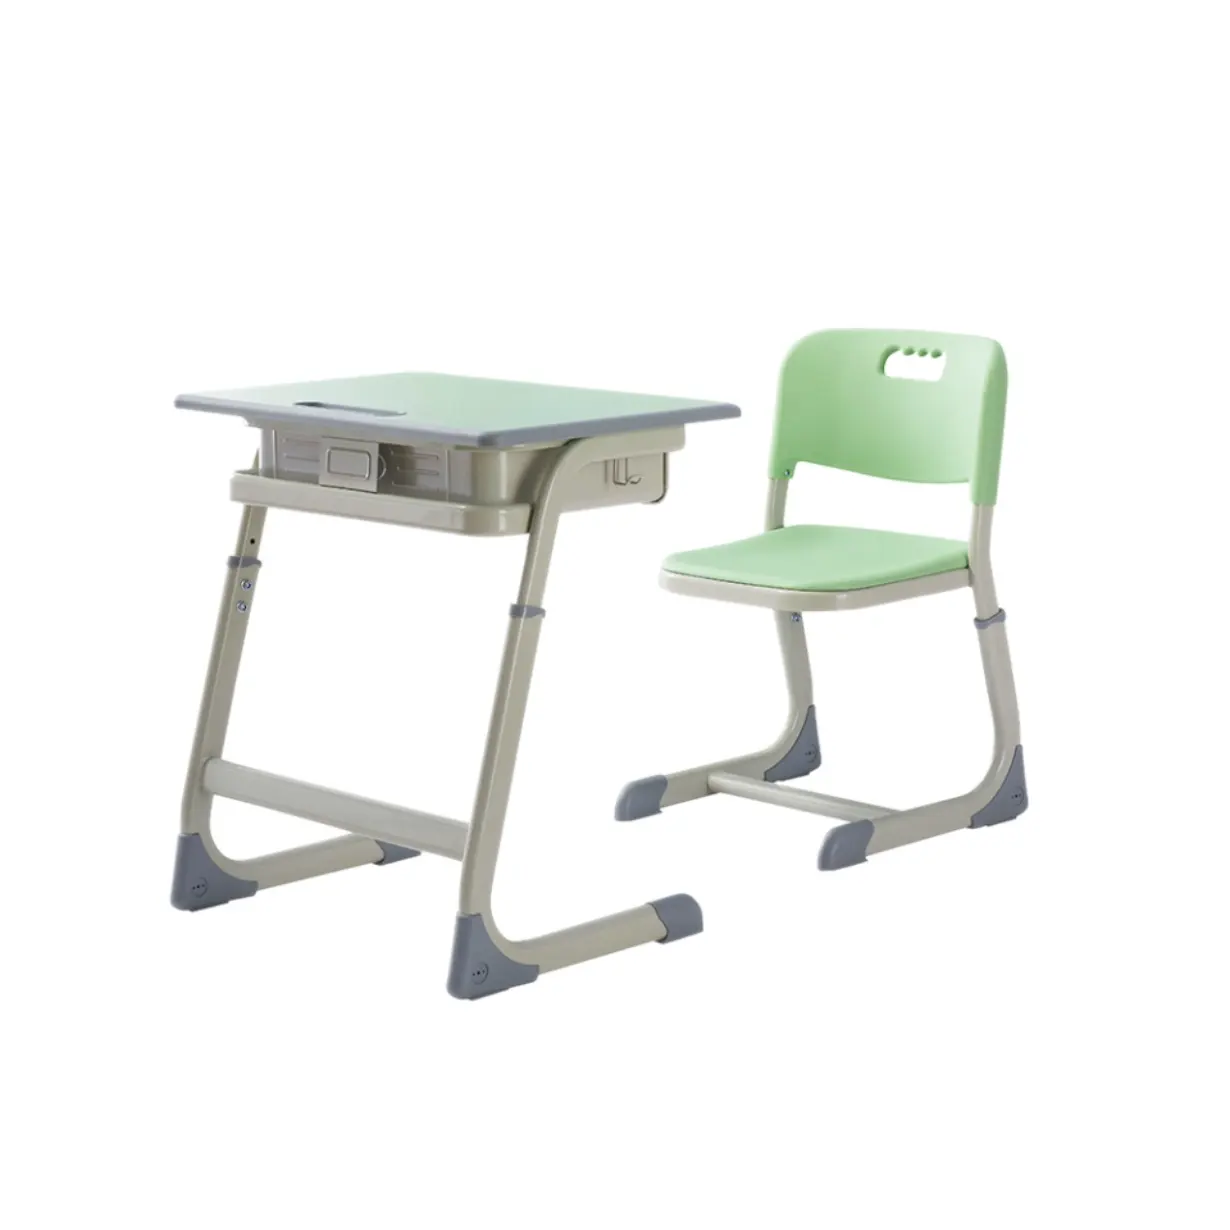 Хит продаж, заводские цены, высококачественные материалы из МДФ, наборы школьной мебели, одинарные столы и стулья